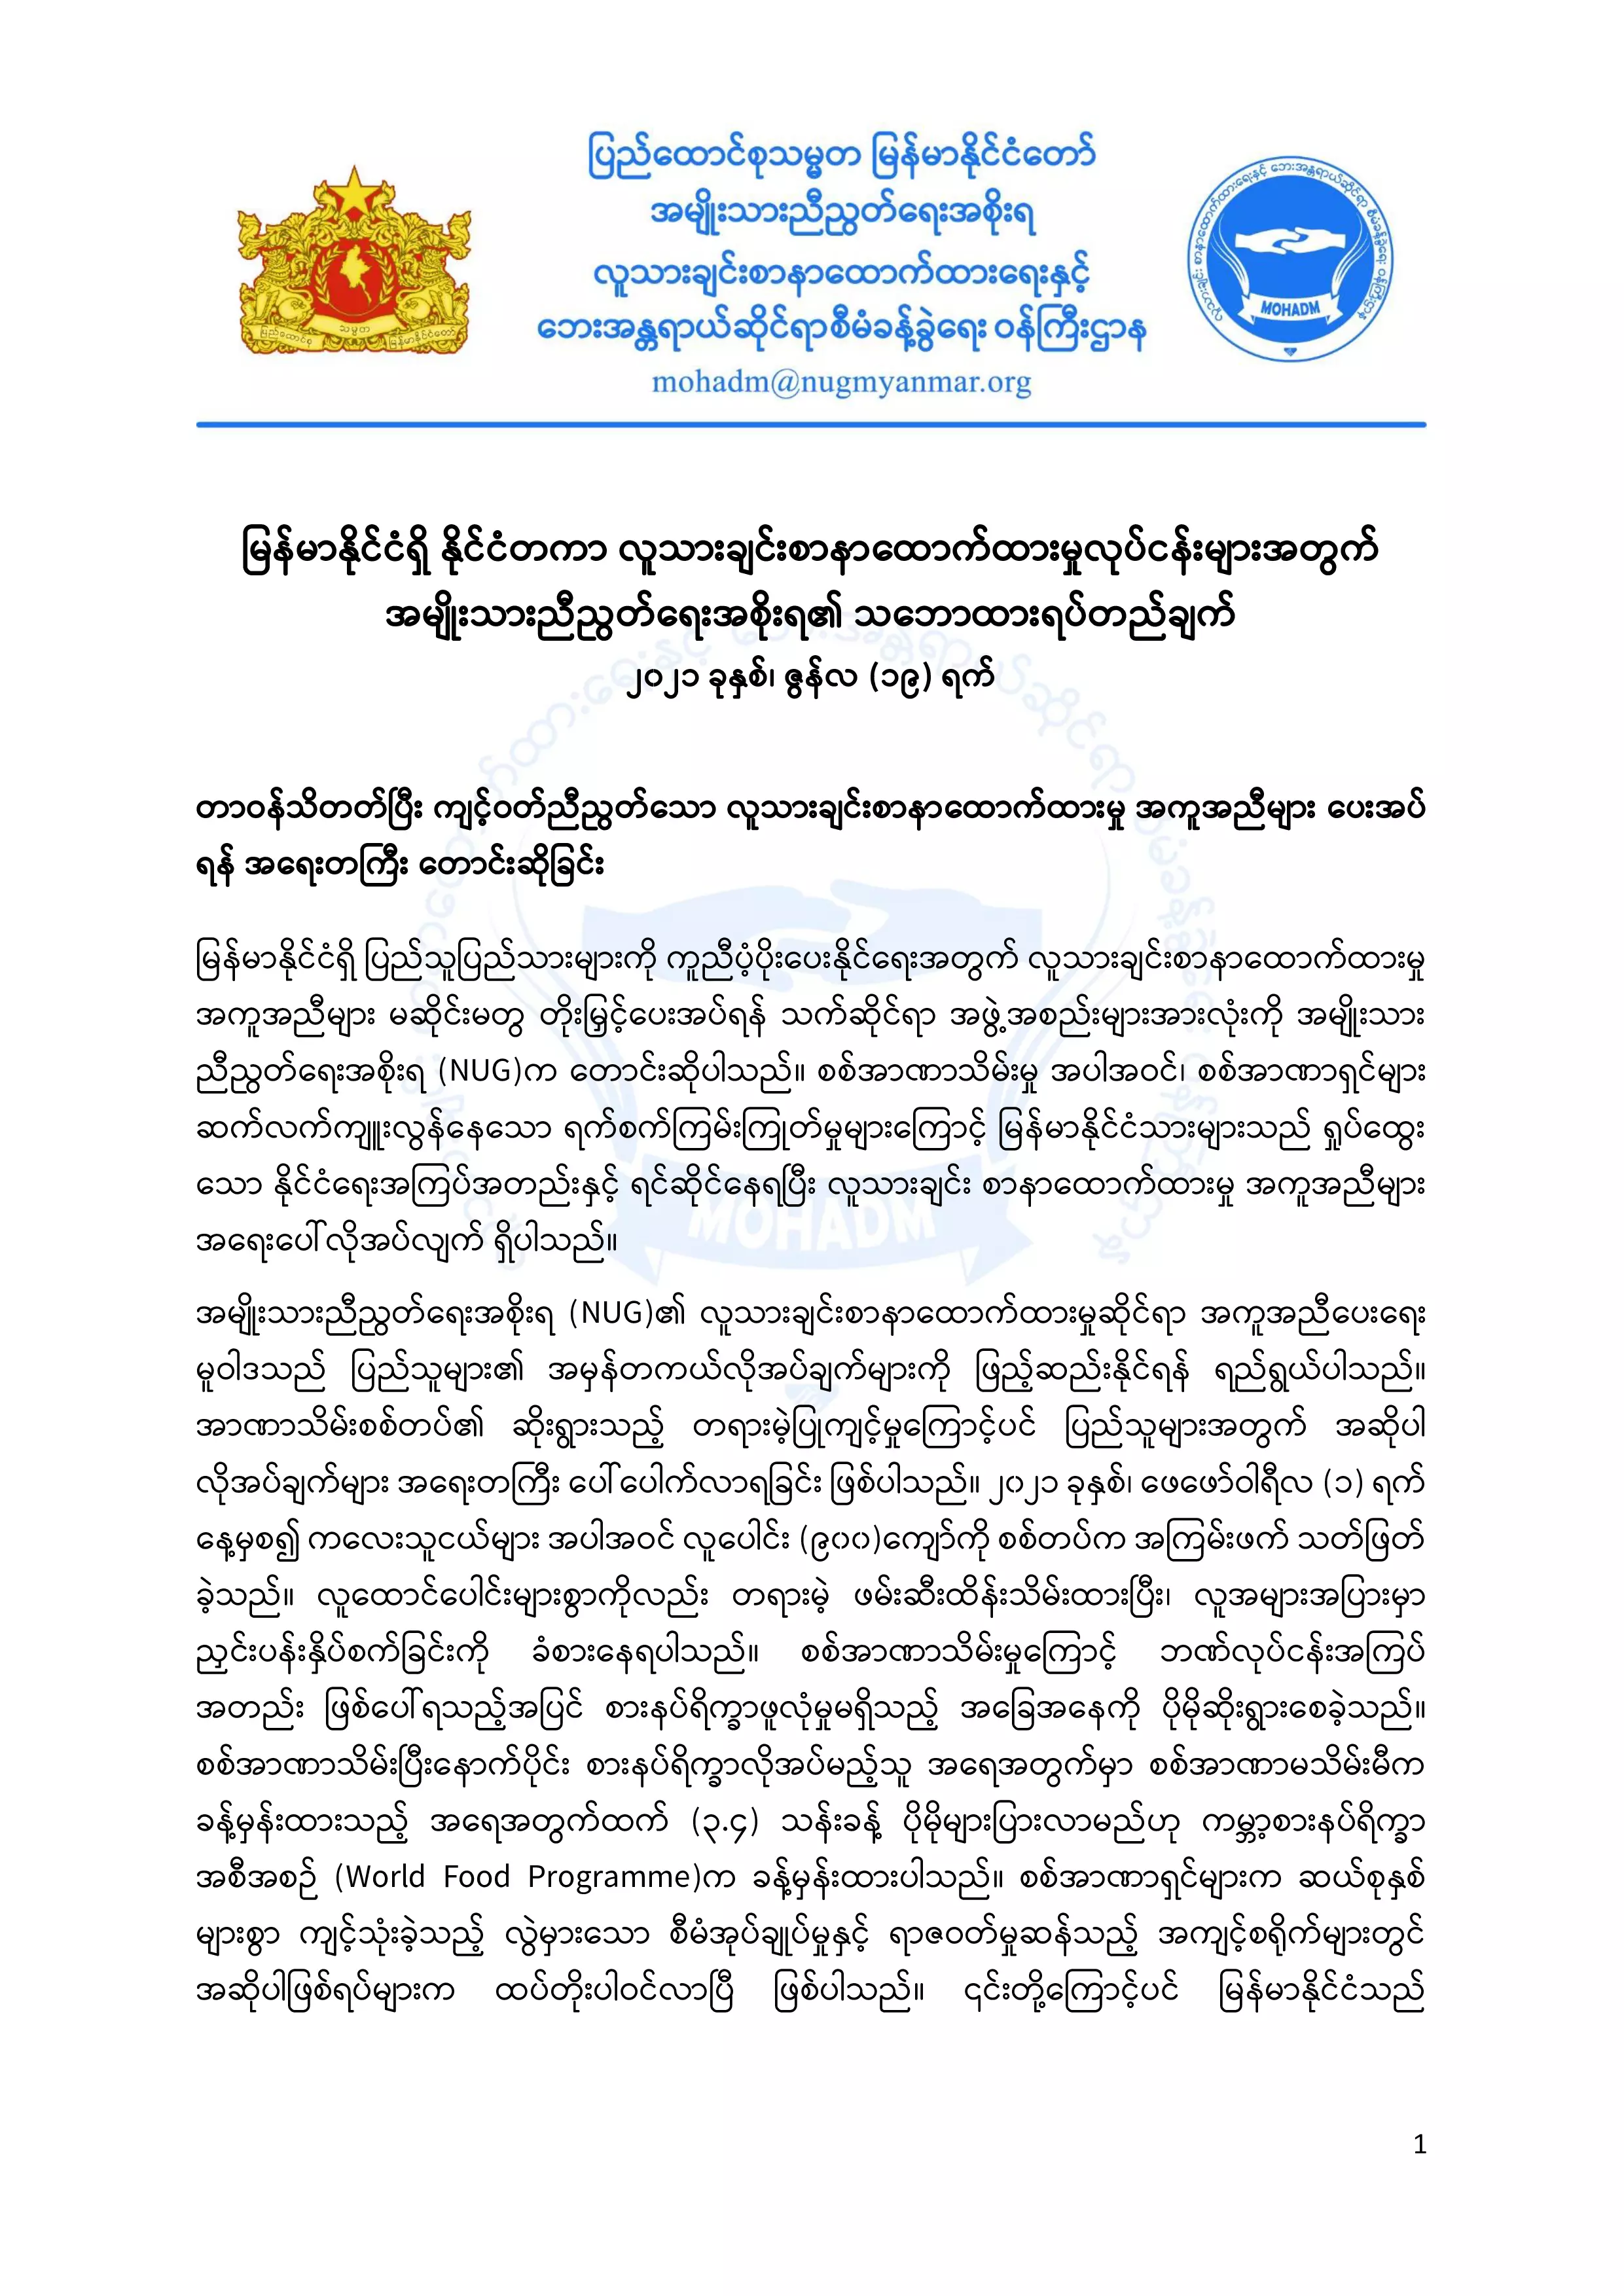 မြန်မာနိုင်ငံရှိ နိုင်ငံတကာ လူသားချင်းစာနာထောက်ထားမှုလုပ်ငန်းများအတွက် အမျိုးသားညီညွတ်ရေးအစိုးရ၏ သဘောထားရပ်တည်ချက်